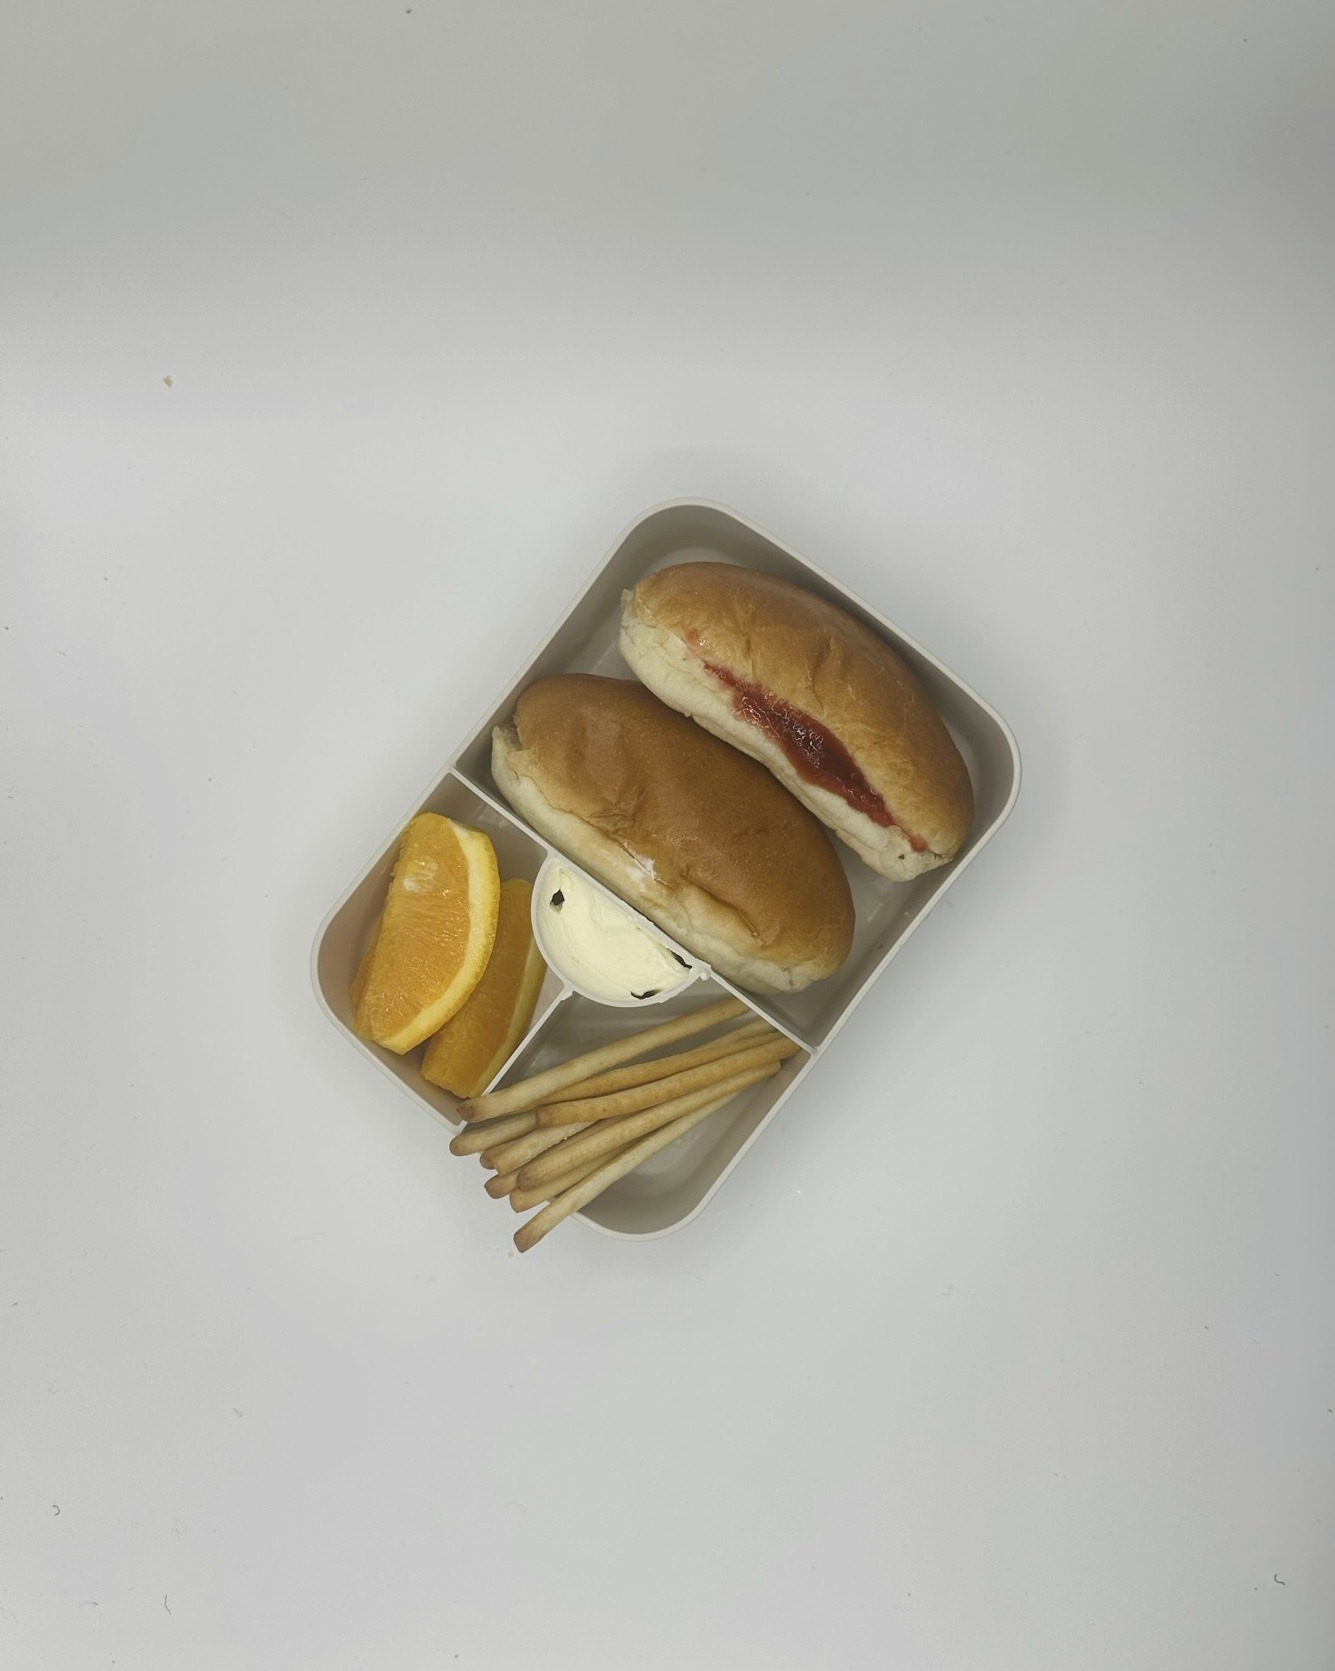 Sandwich hotdogworstje + sandwich aardbeiconfituur, sinaasappel, grissini, smeerkaas